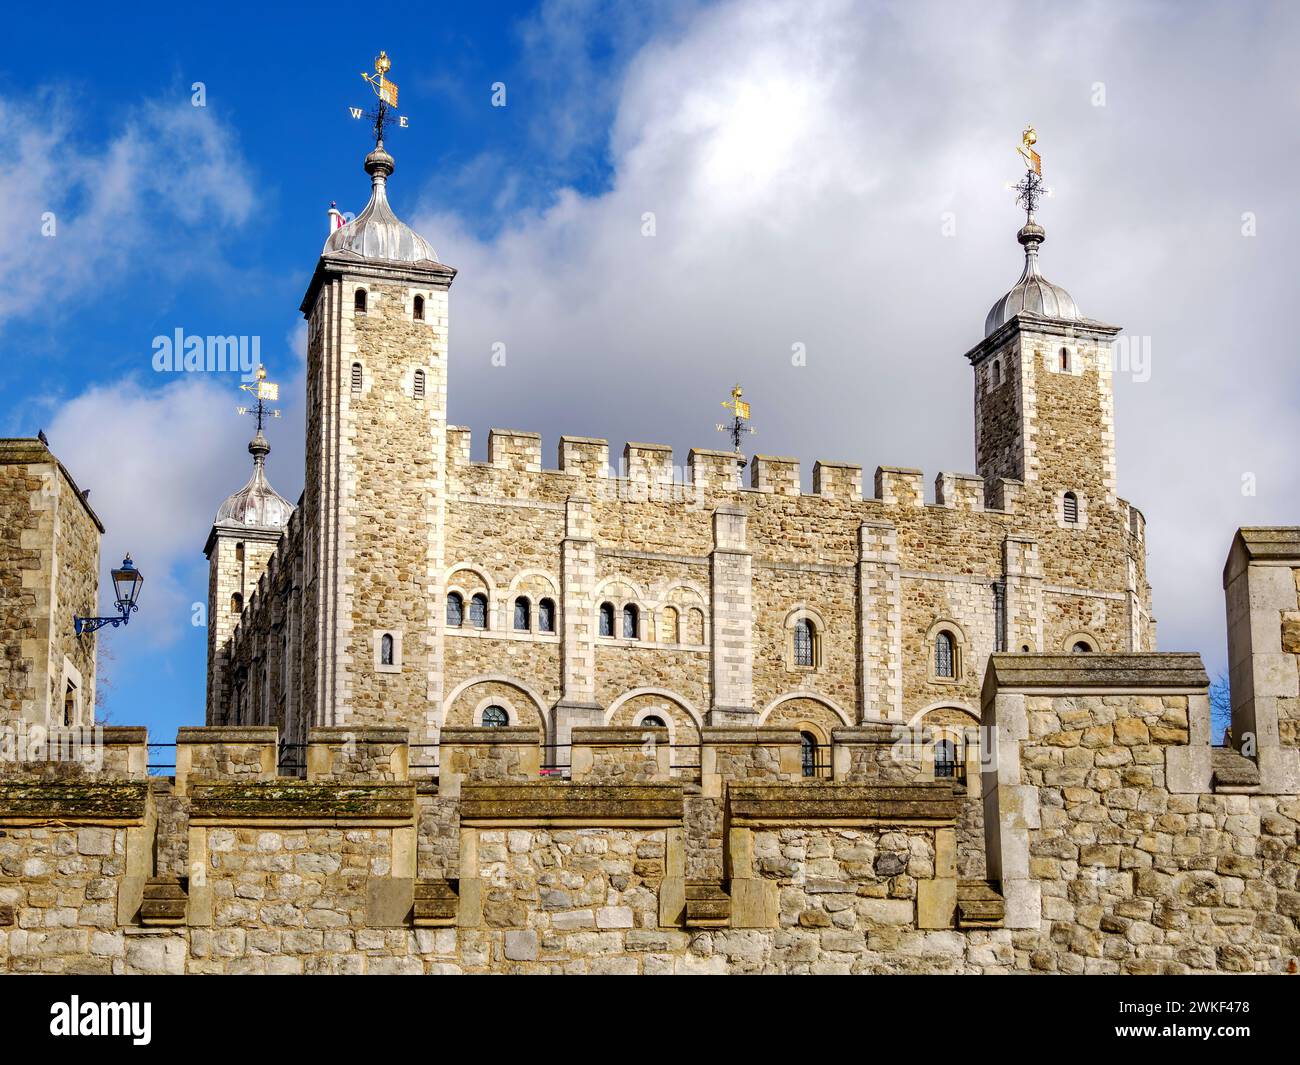 La Torre Bianca della Torre di Londra, costruita da Guglielmo il Conquistatore poco dopo l'invasione normanna nel 1087 Foto Stock